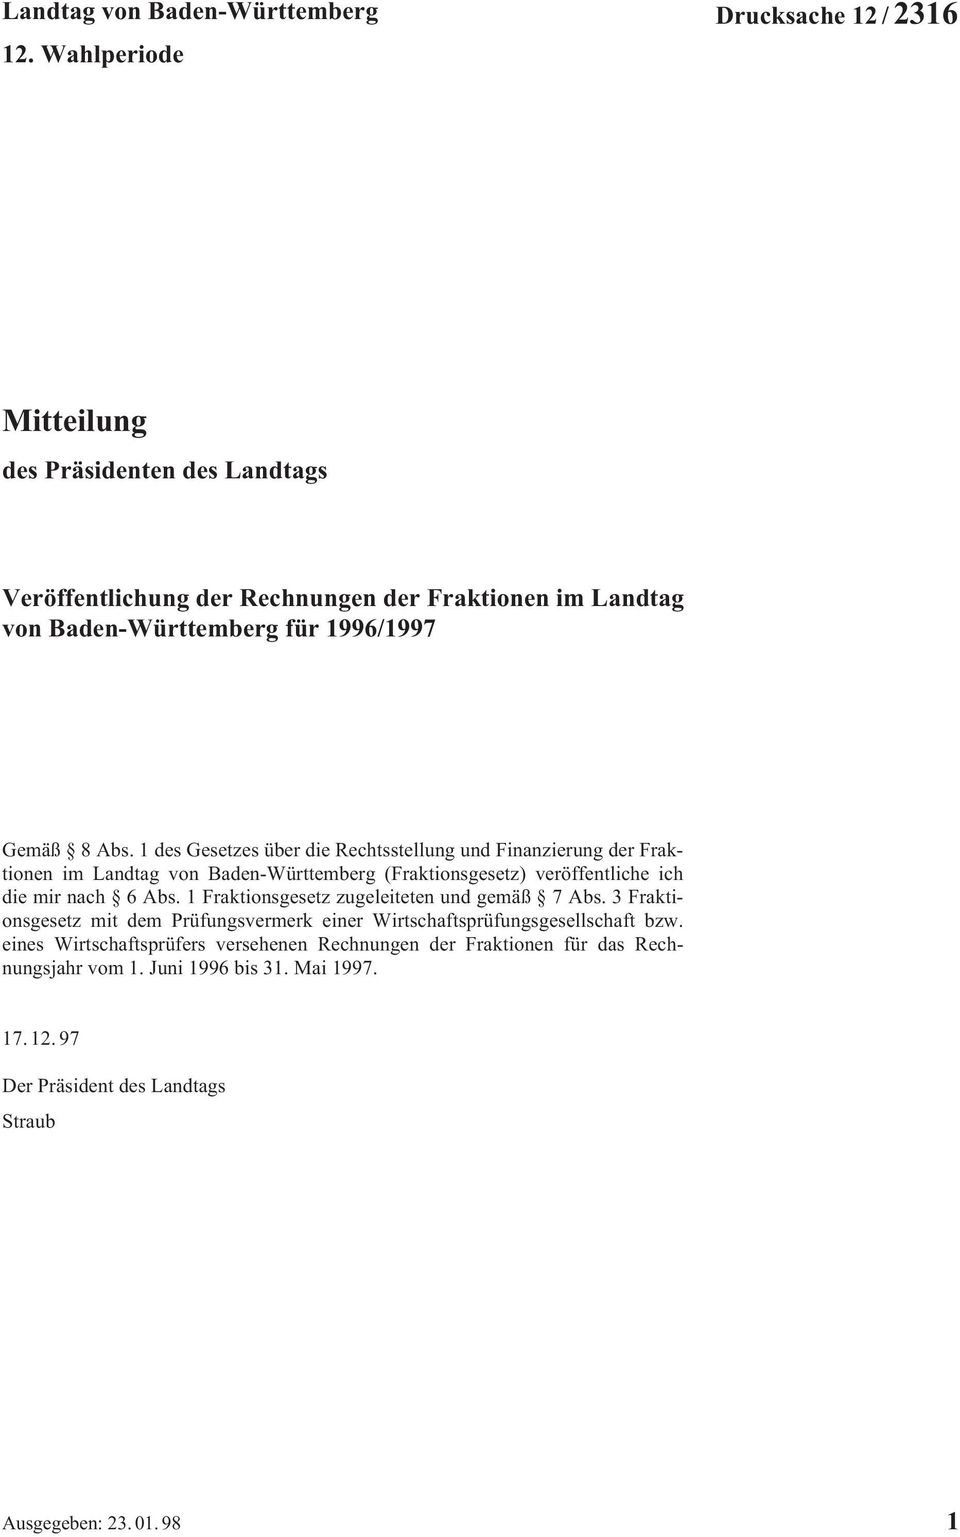 8 Abs. 1 des Gesetzes über die Rechtsstellung und Finanzierung der Fraktionen im Landtag von Baden-Württemberg (Fraktionsgesetz) veröffentliche ich die mir nach 6 Abs.